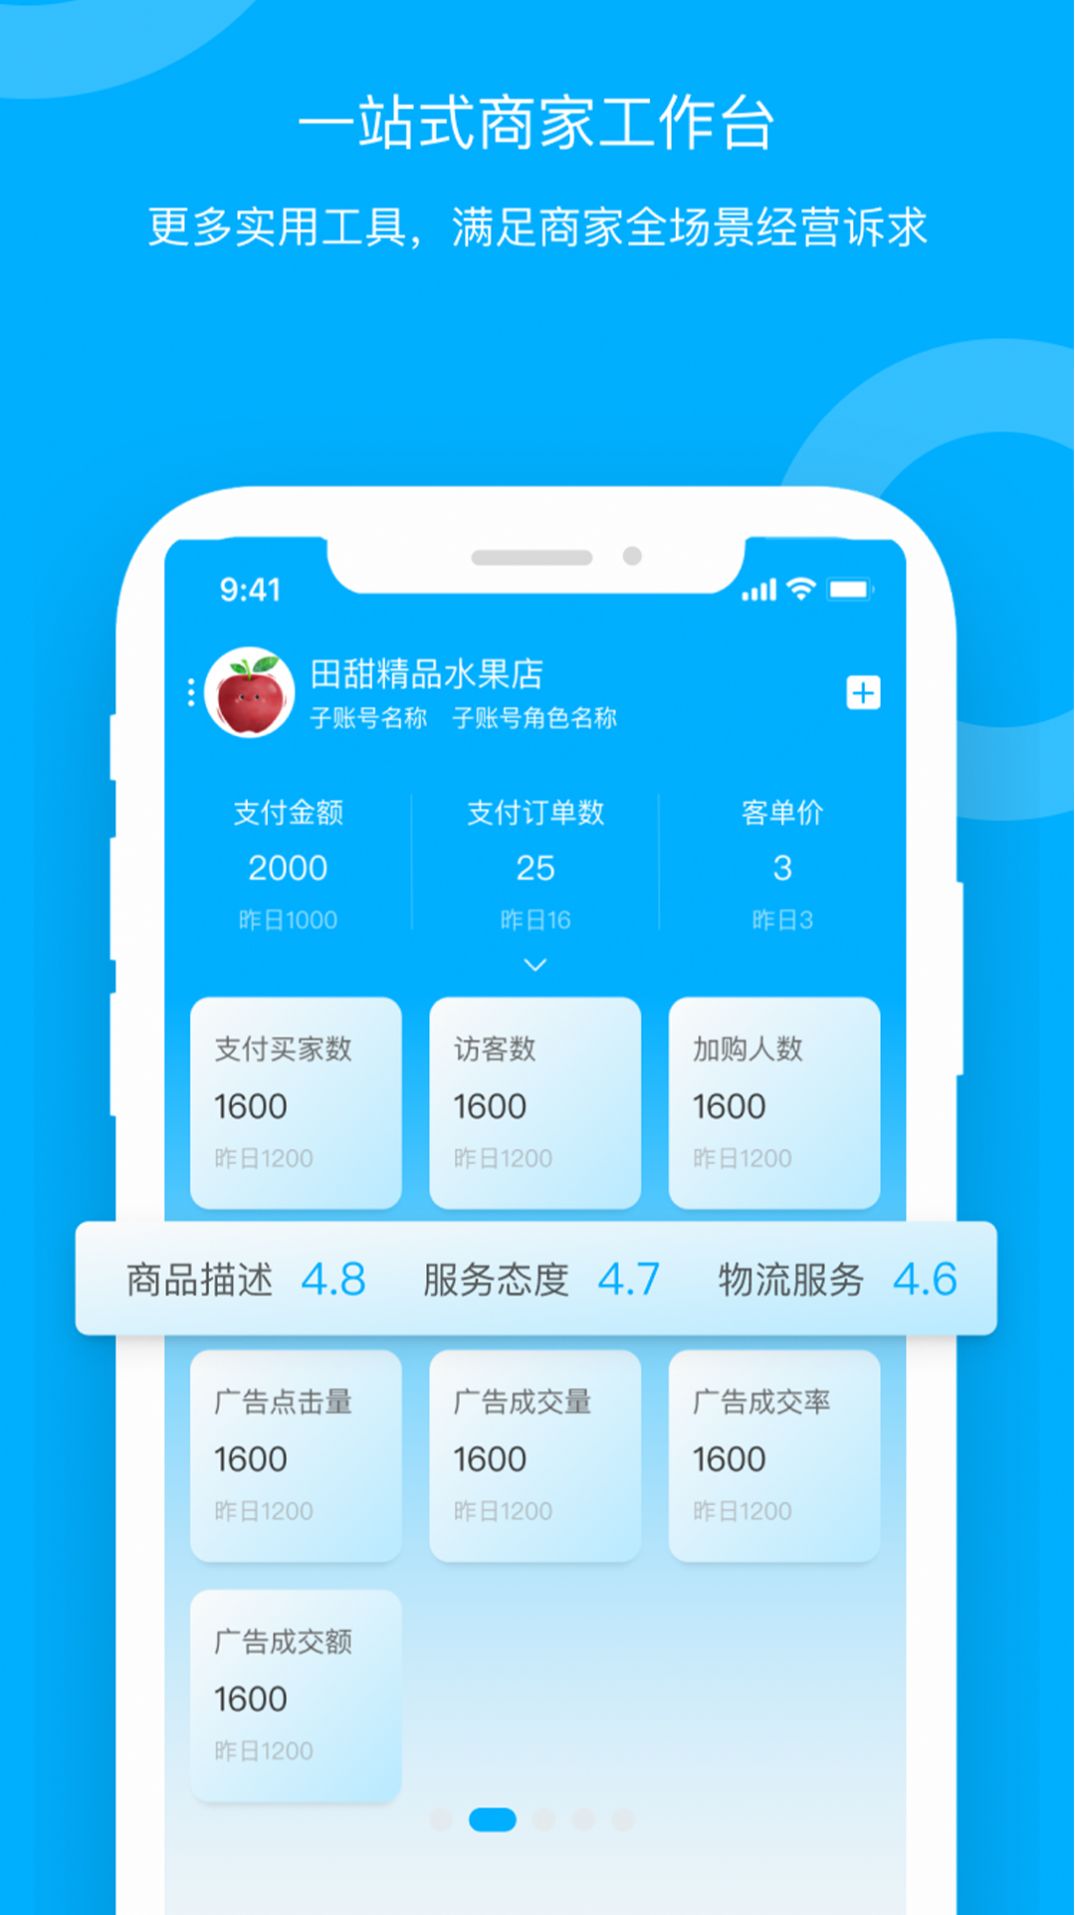 青海新发地卖家app,青海新发地卖家